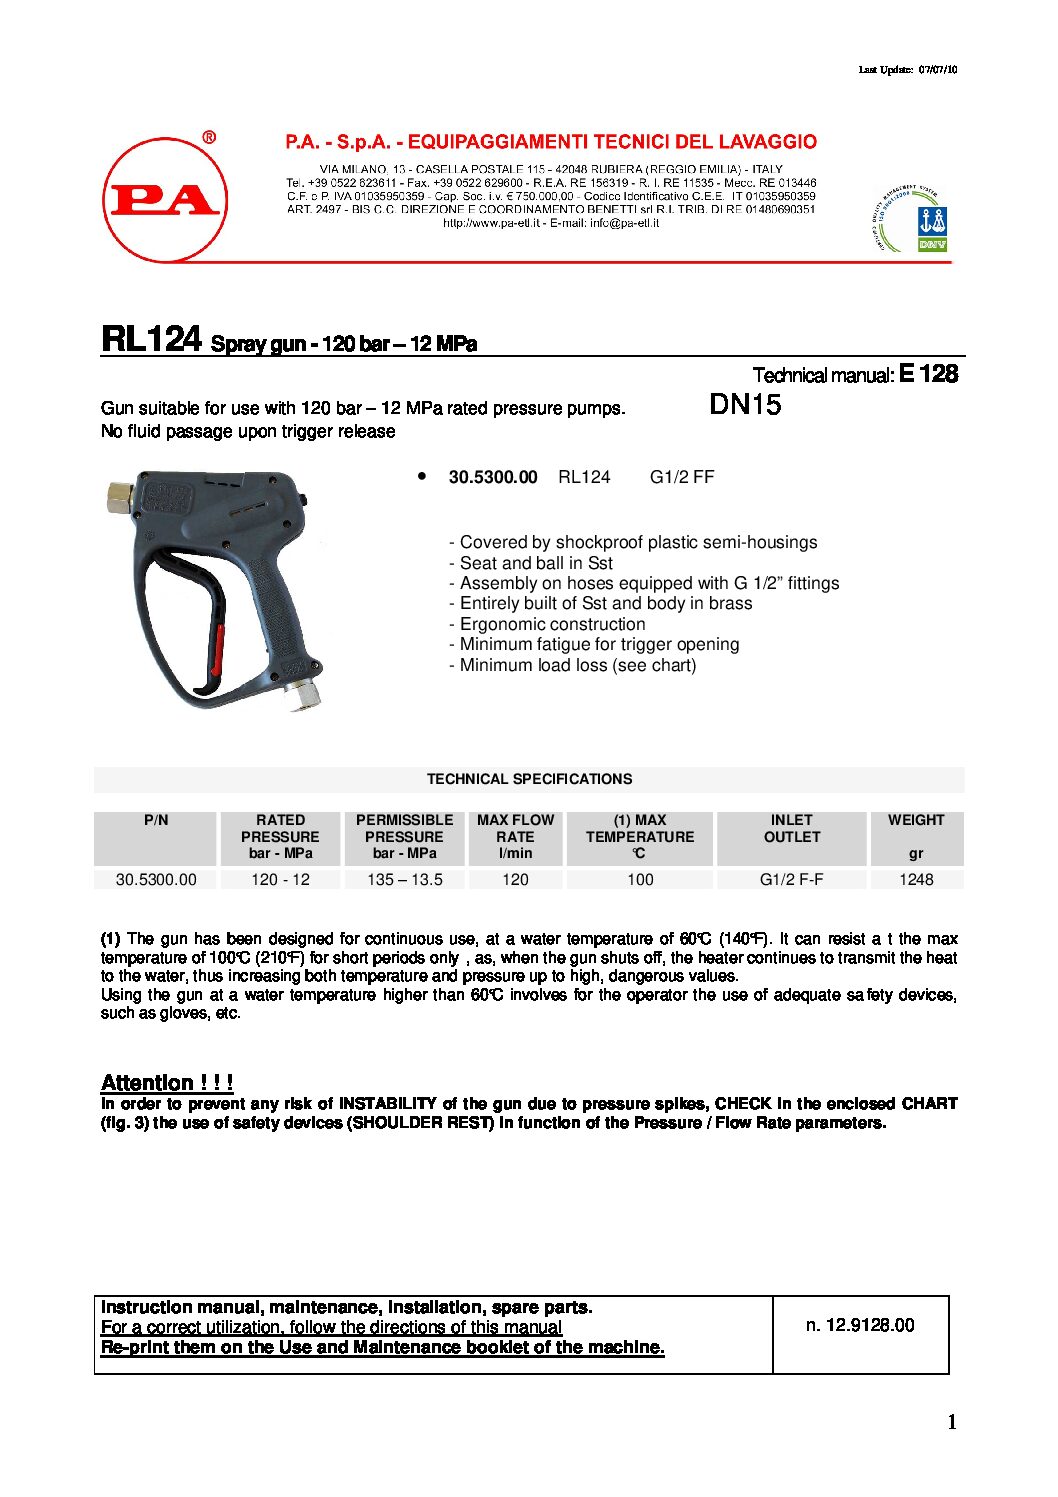 PA RL124 Large flow Spray Gun technical information